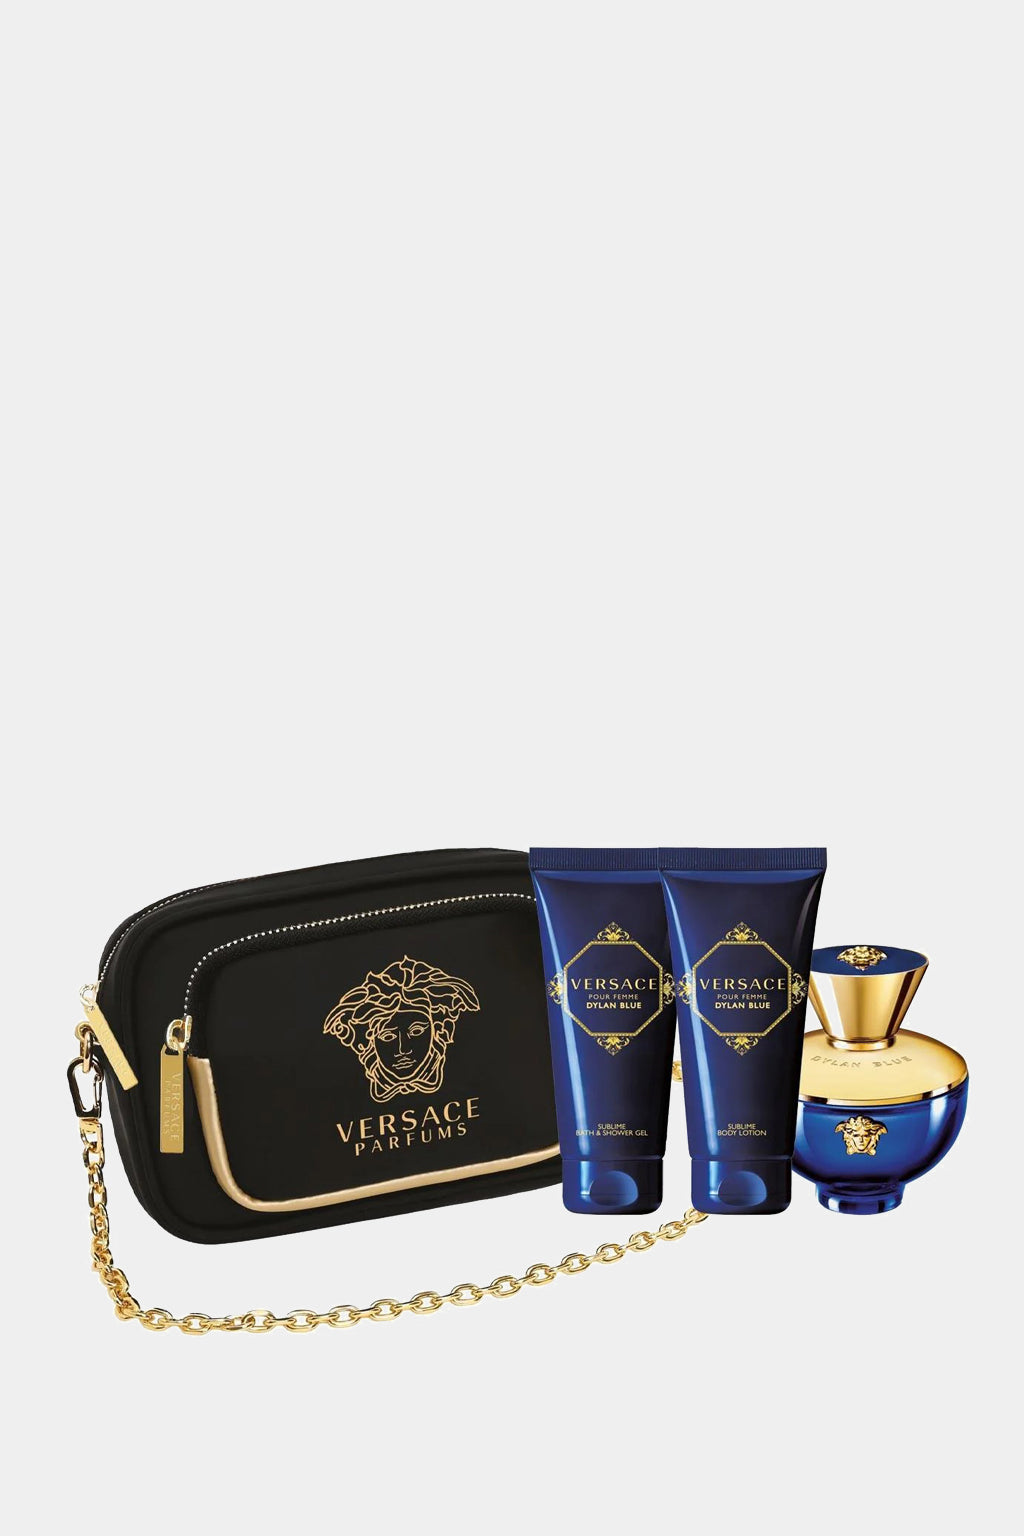 Versace - Pour Femme Dylan Blue Eau de Parfum Set